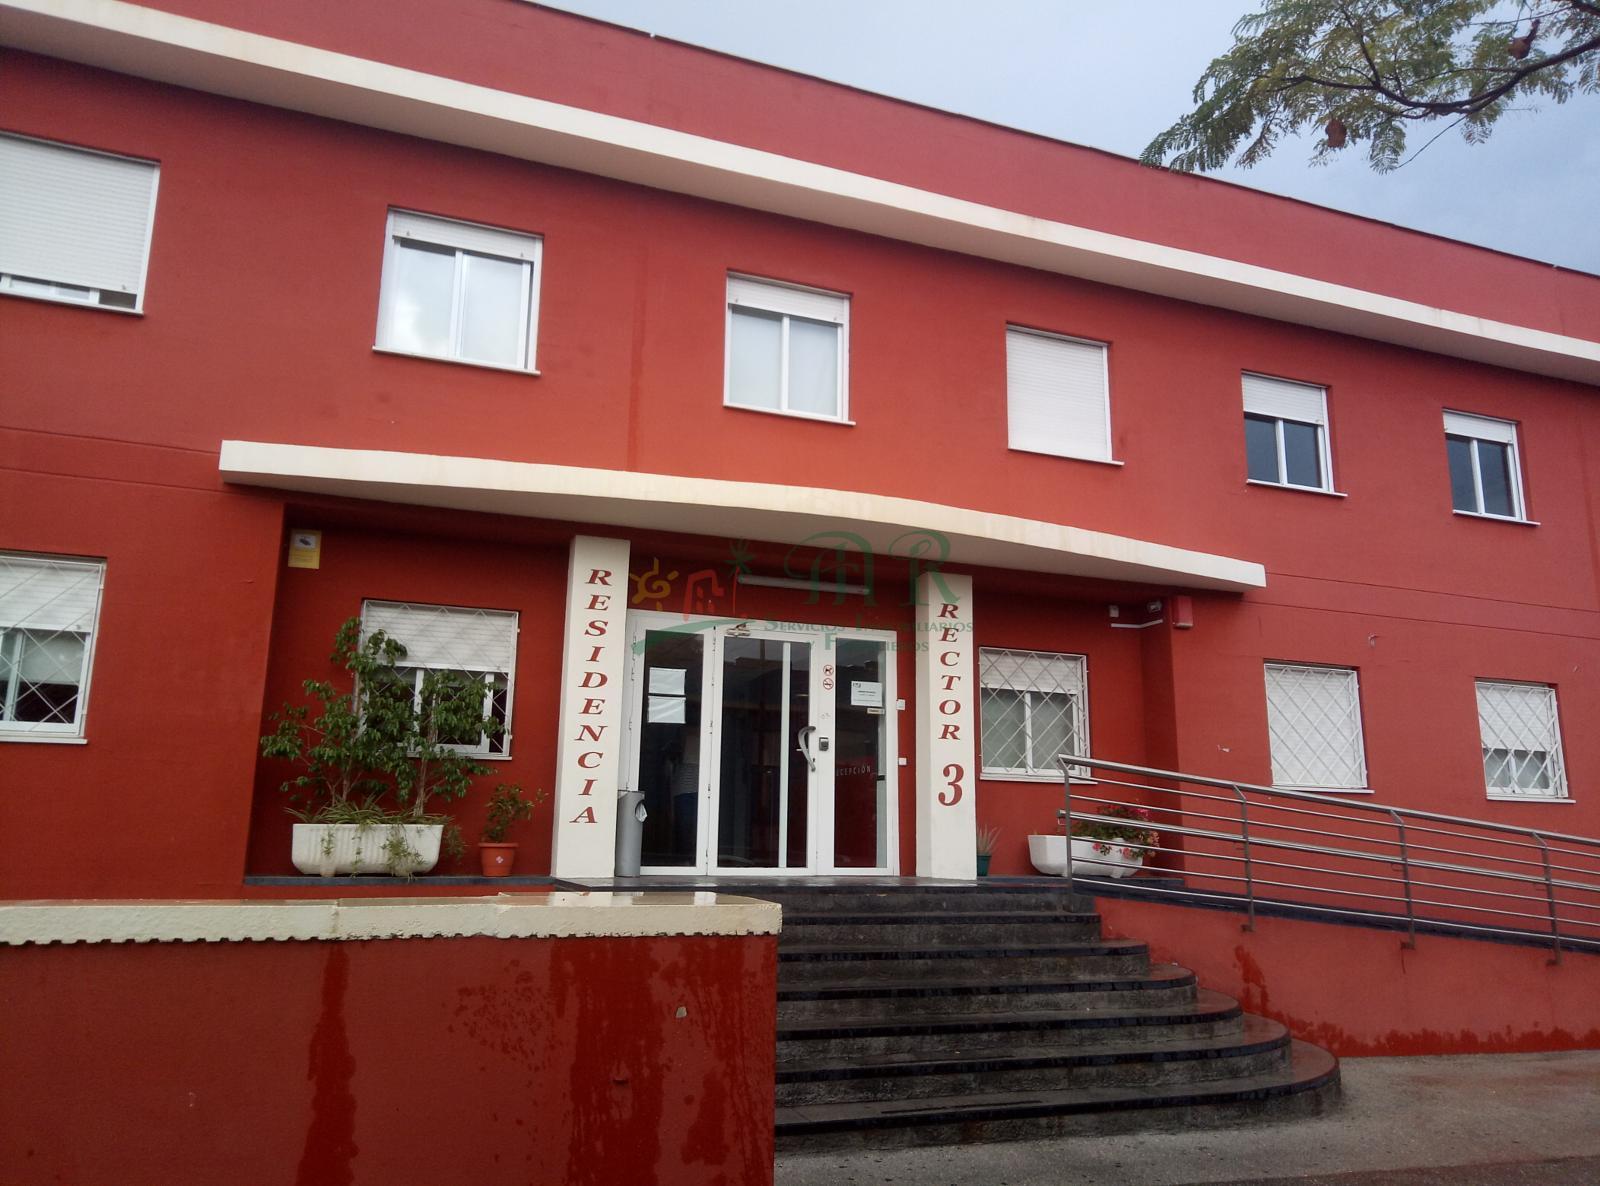 For sale of study in San Vicente del Raspeig